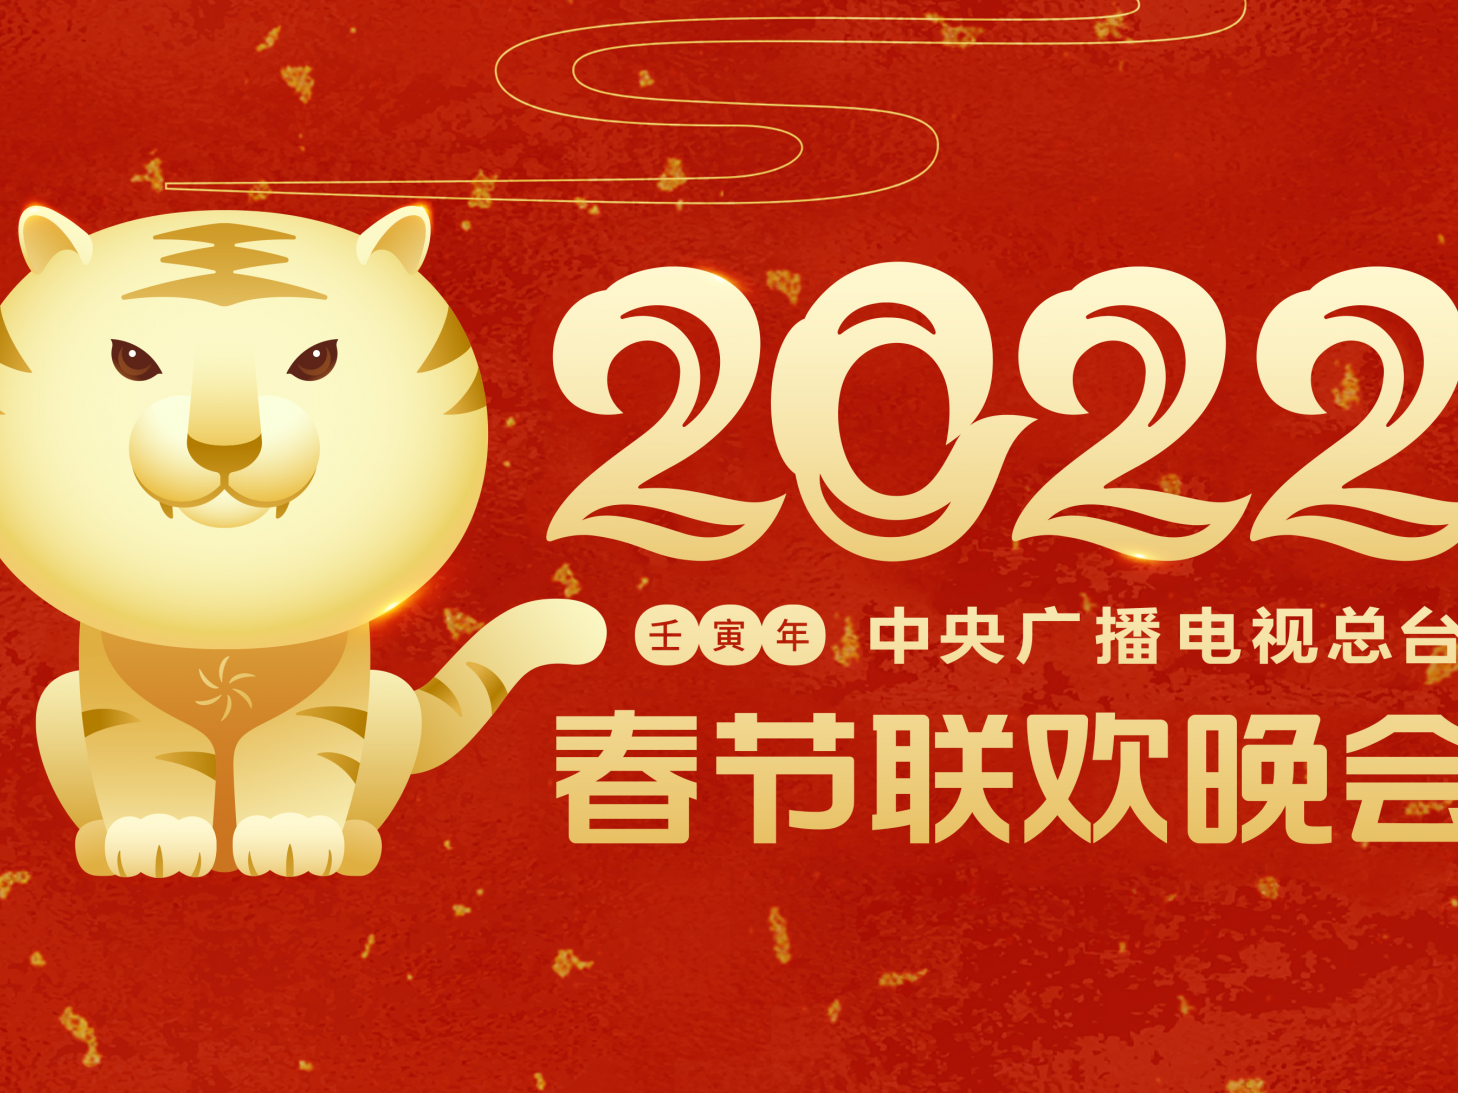 2022年春节联欢晚会举行首次彩排